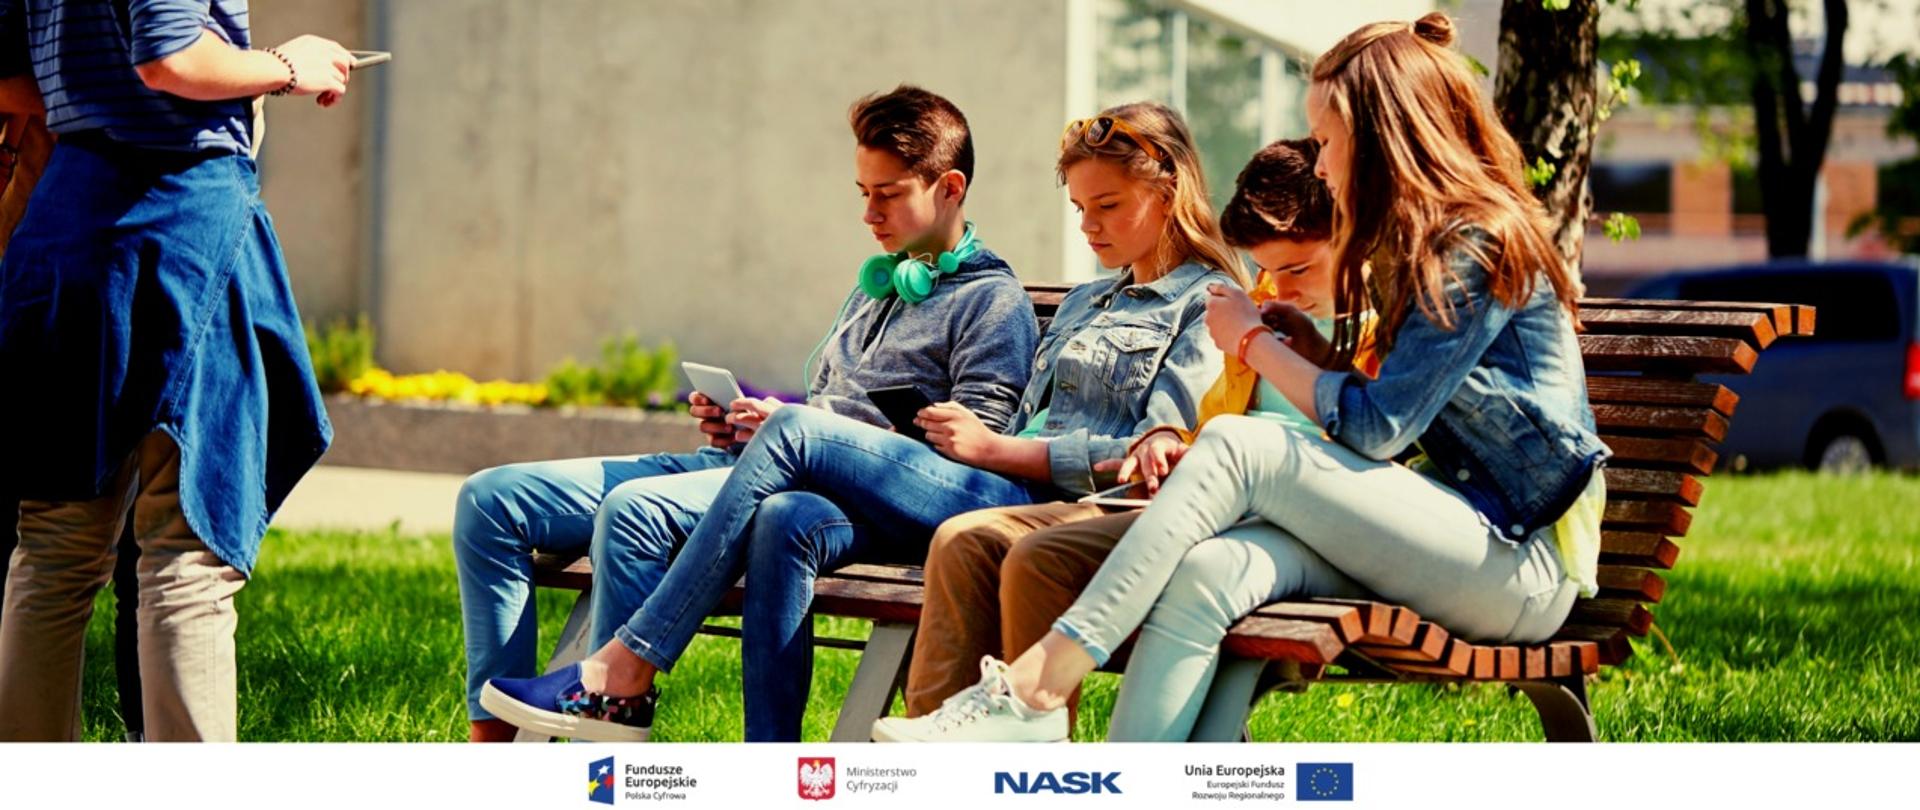 grupa nastolatków siedzi na ławce, trzymają telefony w rękach